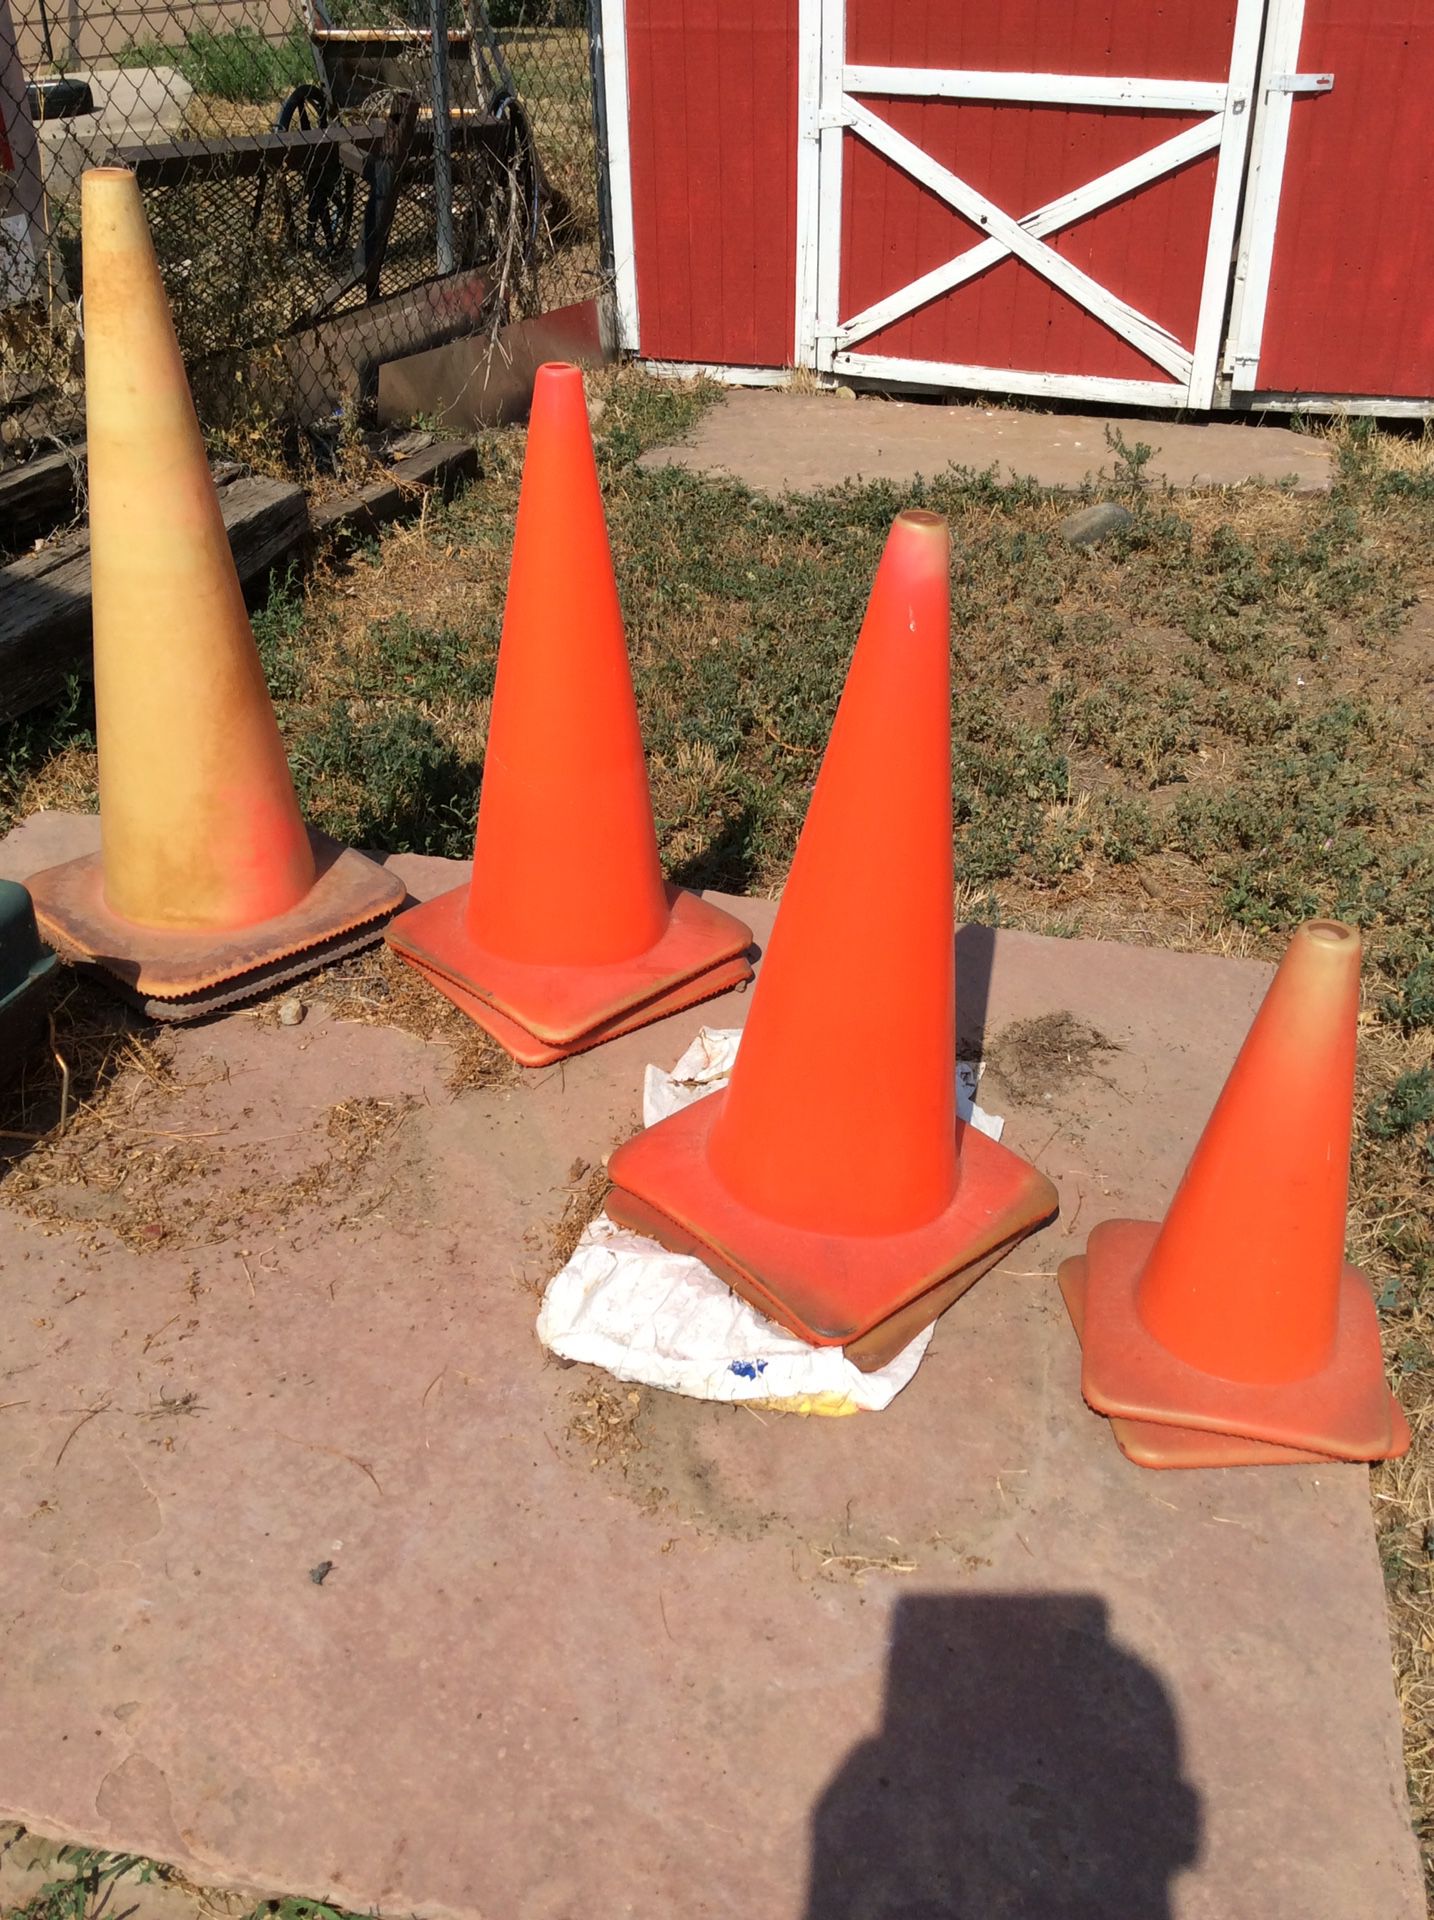 Free cones